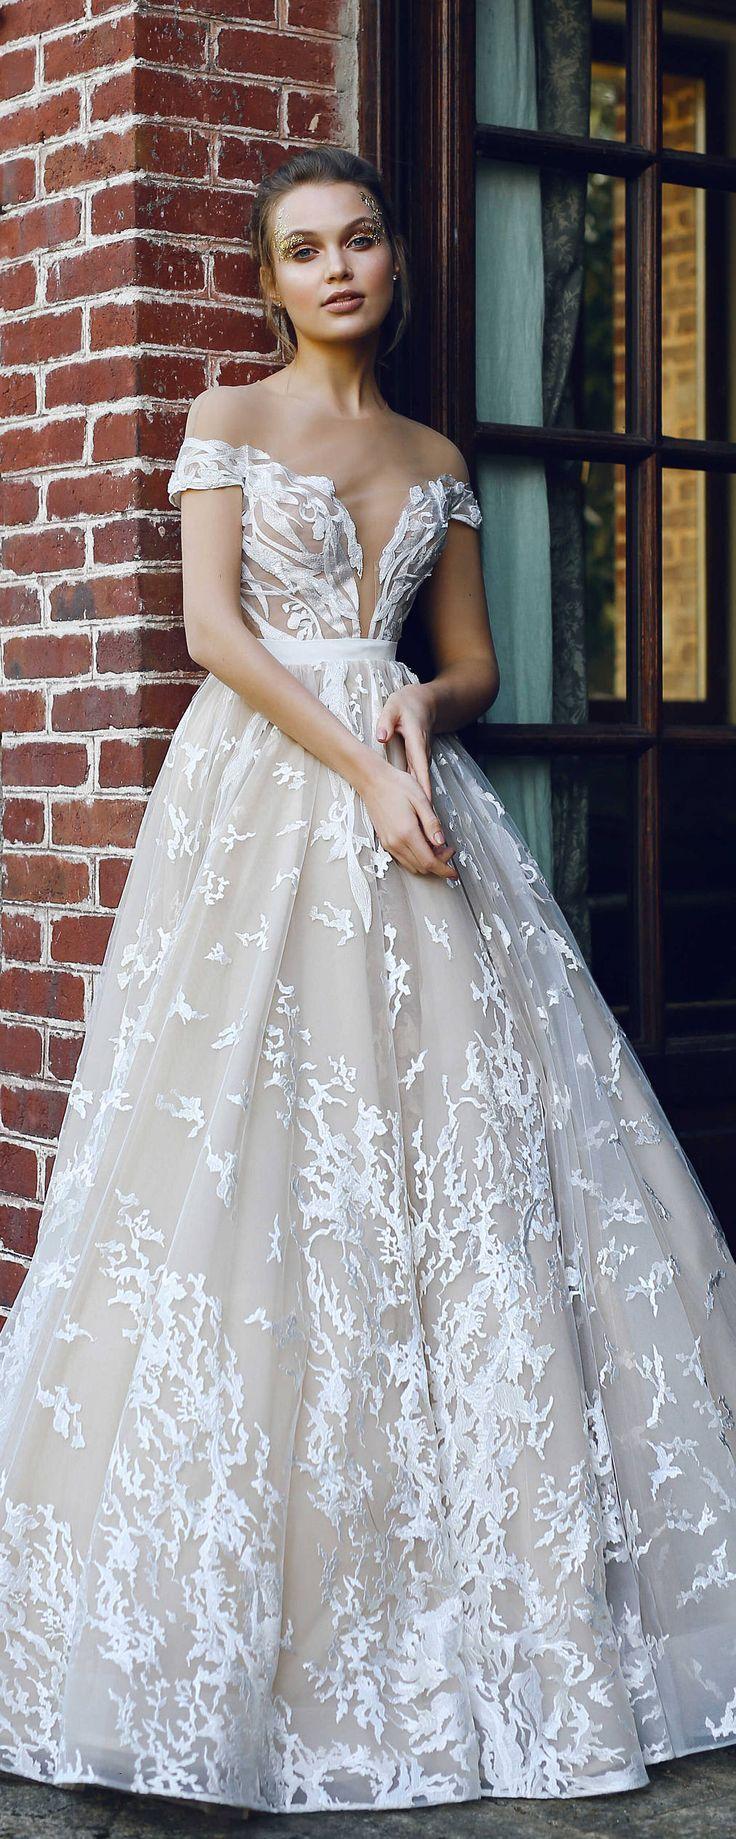 زفاف - Wedding Dress ETEL, Wedding Dress A-line, Wedding Dress Ball Gown, Wedding Dress Long Sleeves